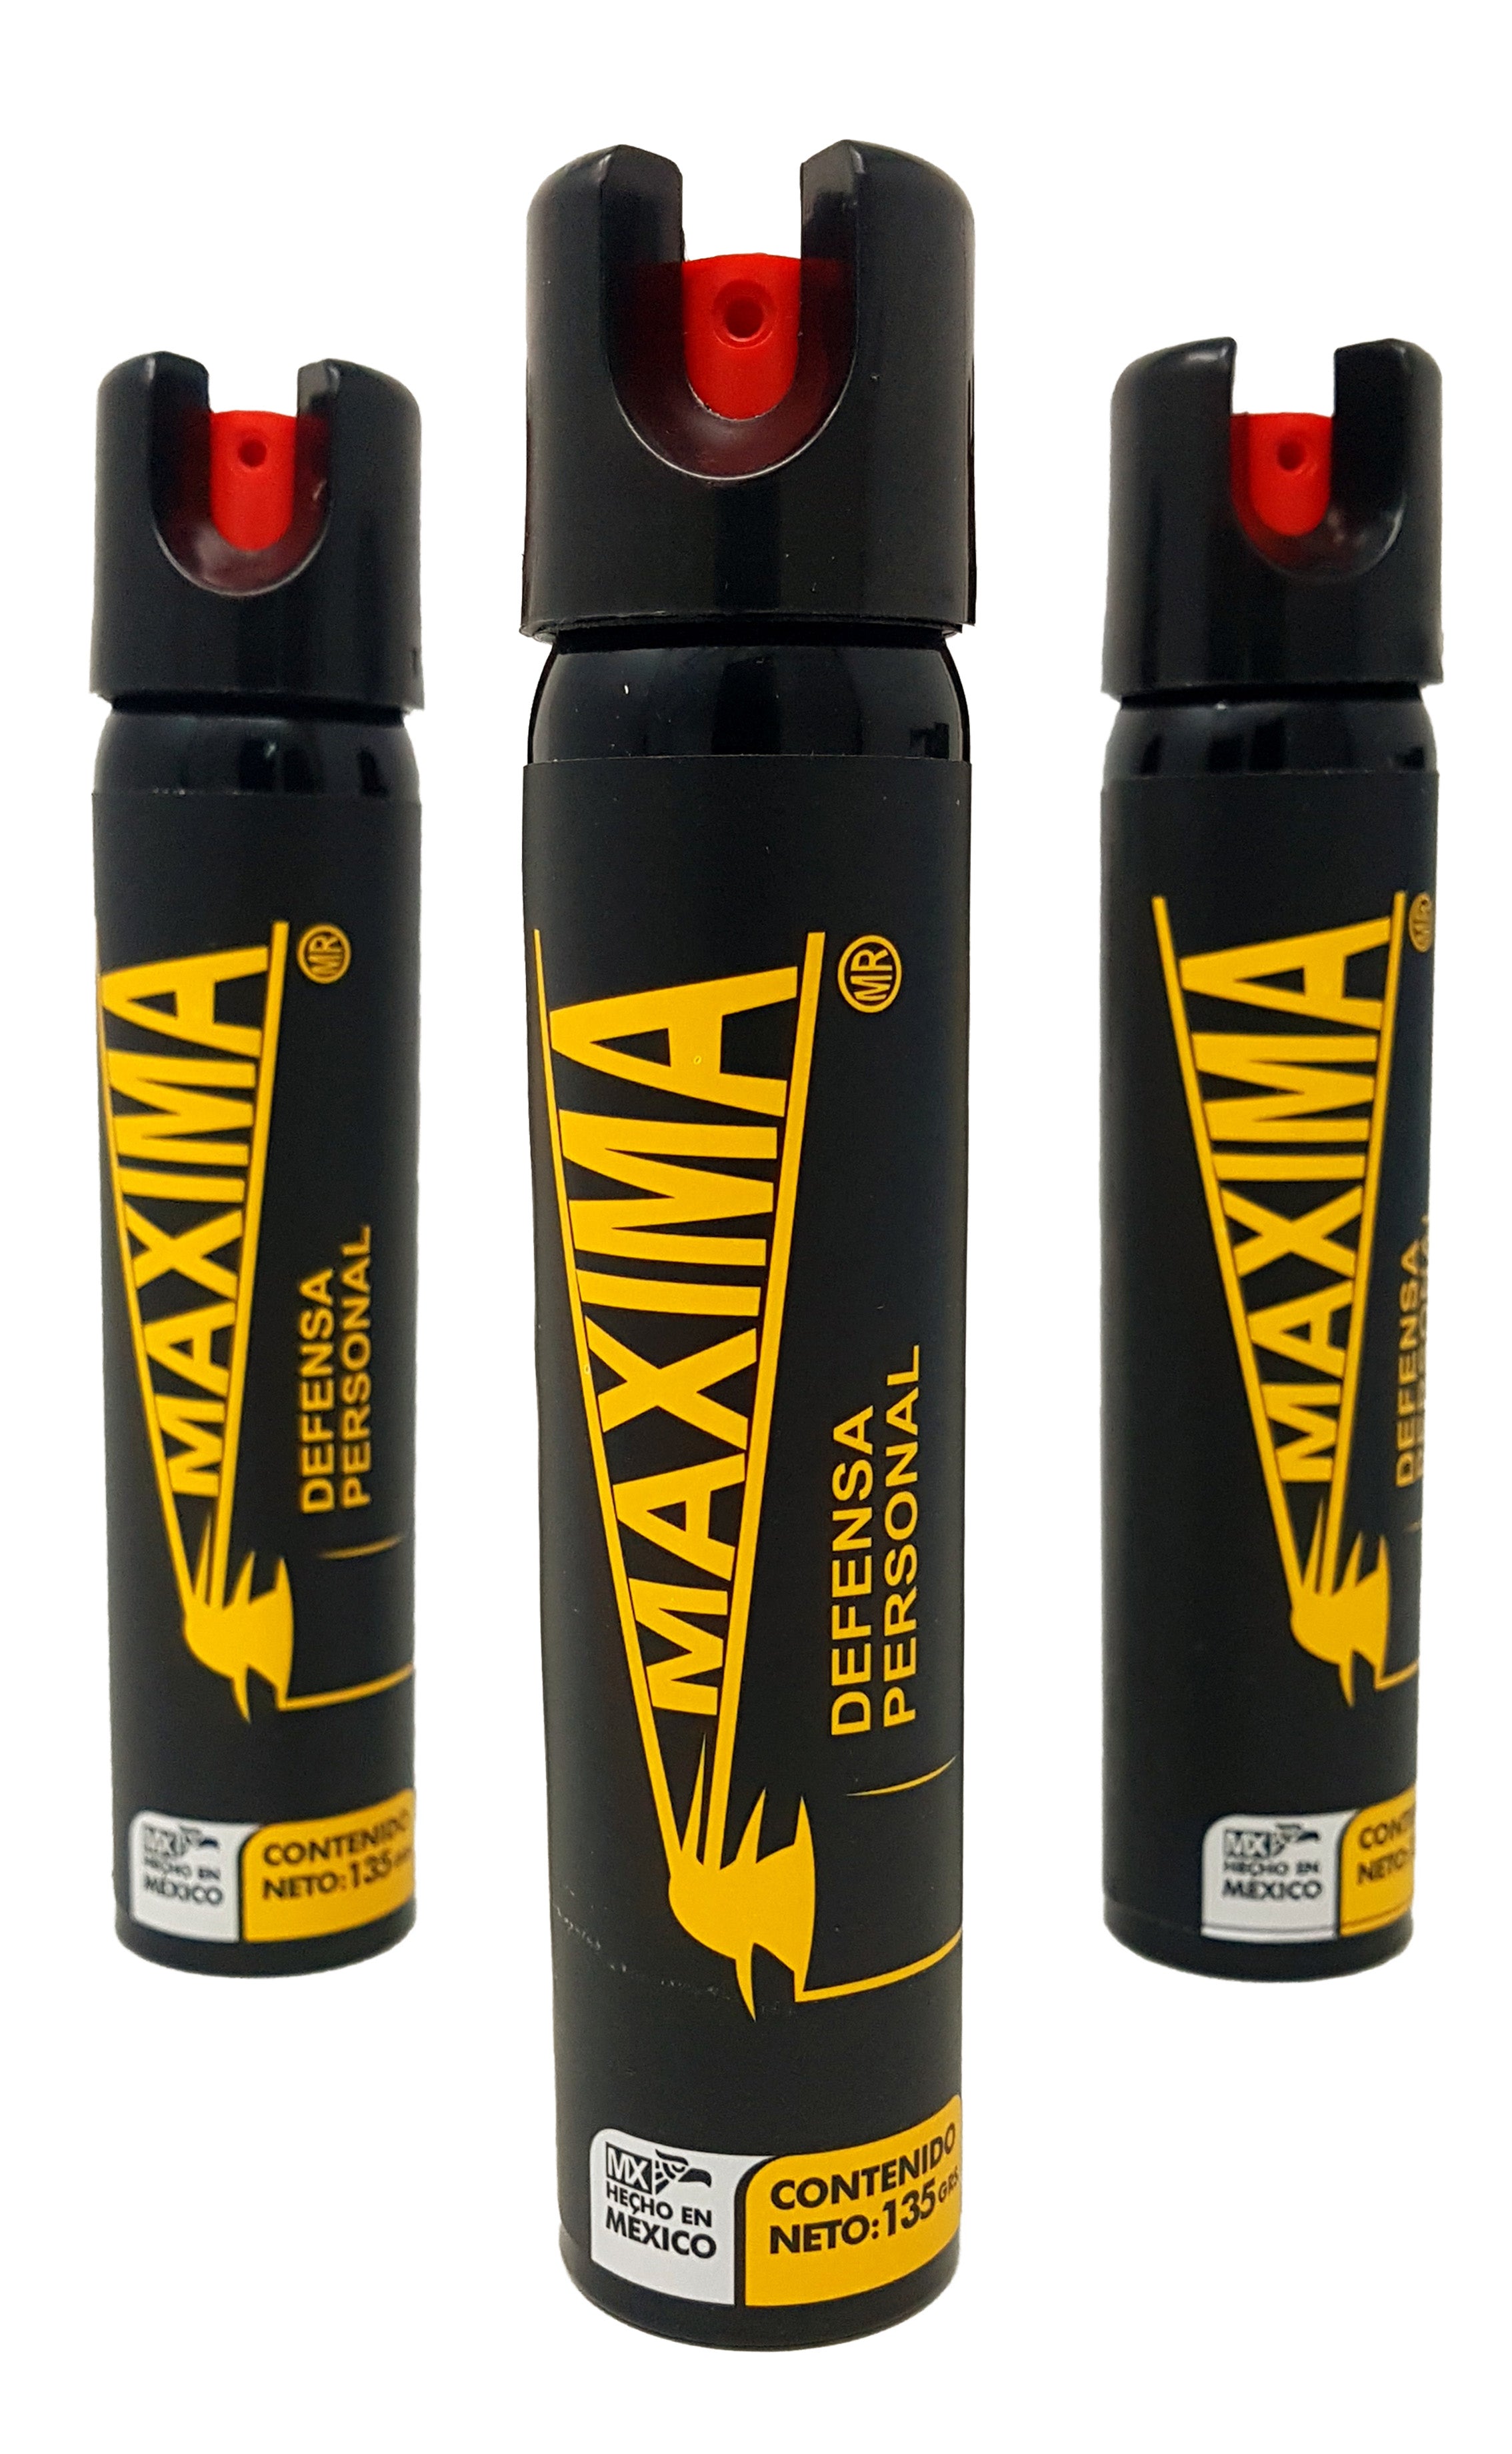 Gas Pimienta Paralizador Defensa Personal Lacrimogeno Spray